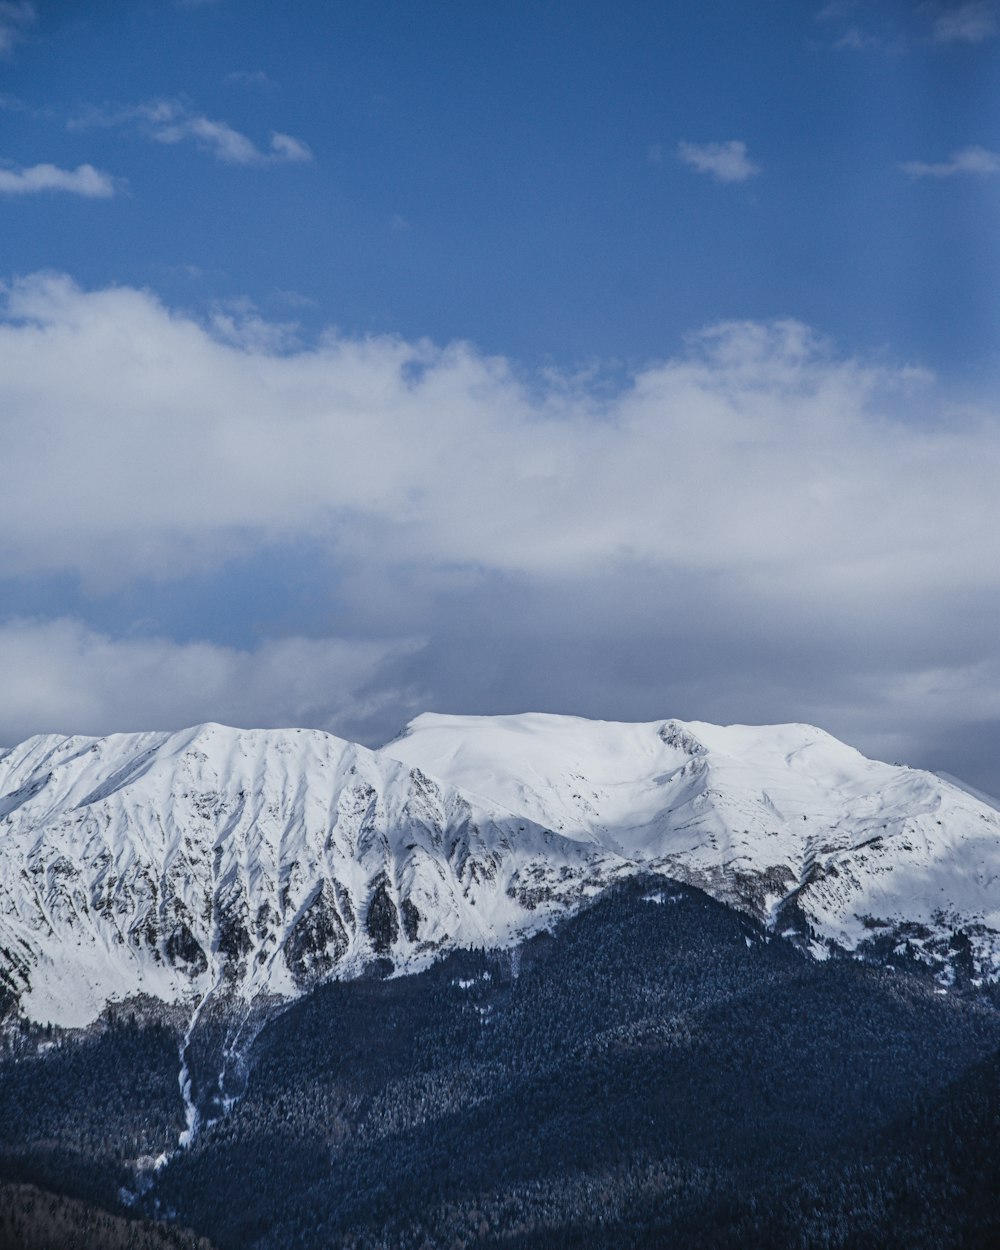 fotografia aerea della sommità della montagna coperta di neve sotto il cielo bianco e blu